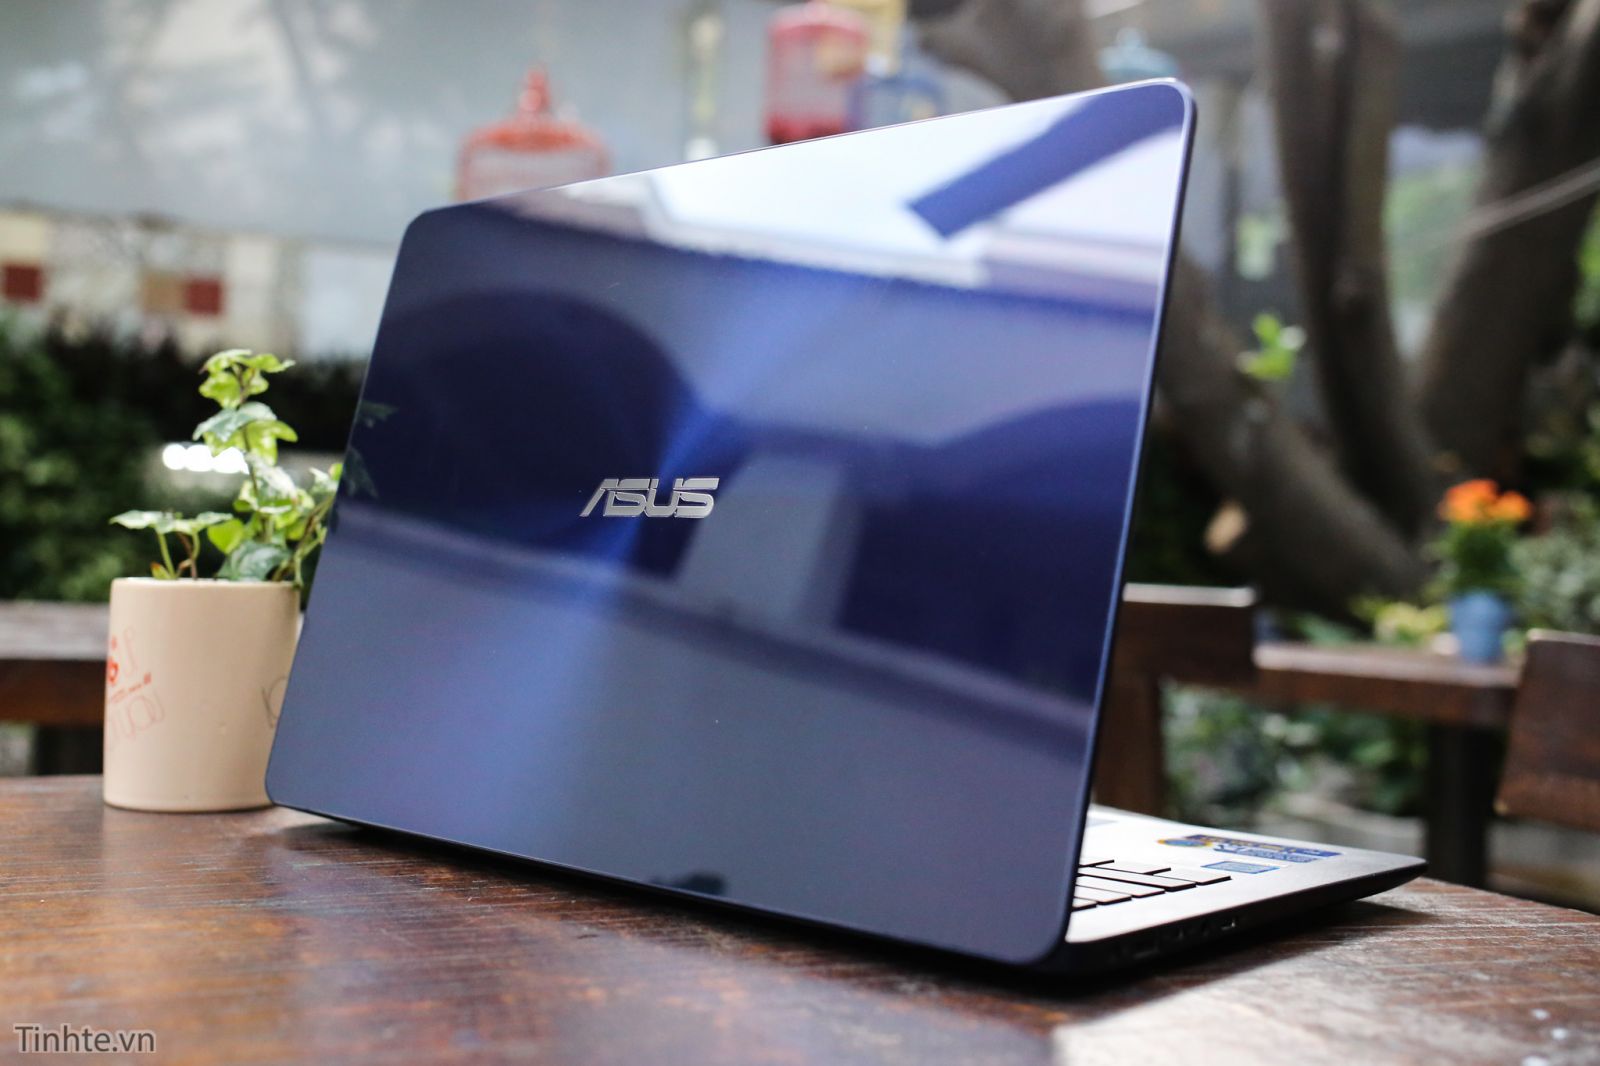 Laptop Asus Zenbook UX430UA/ i5 7200U/ 8G/ SSD256G/ Full HD/ Viền Mỏng/ Win 10/ Giá rẻ7